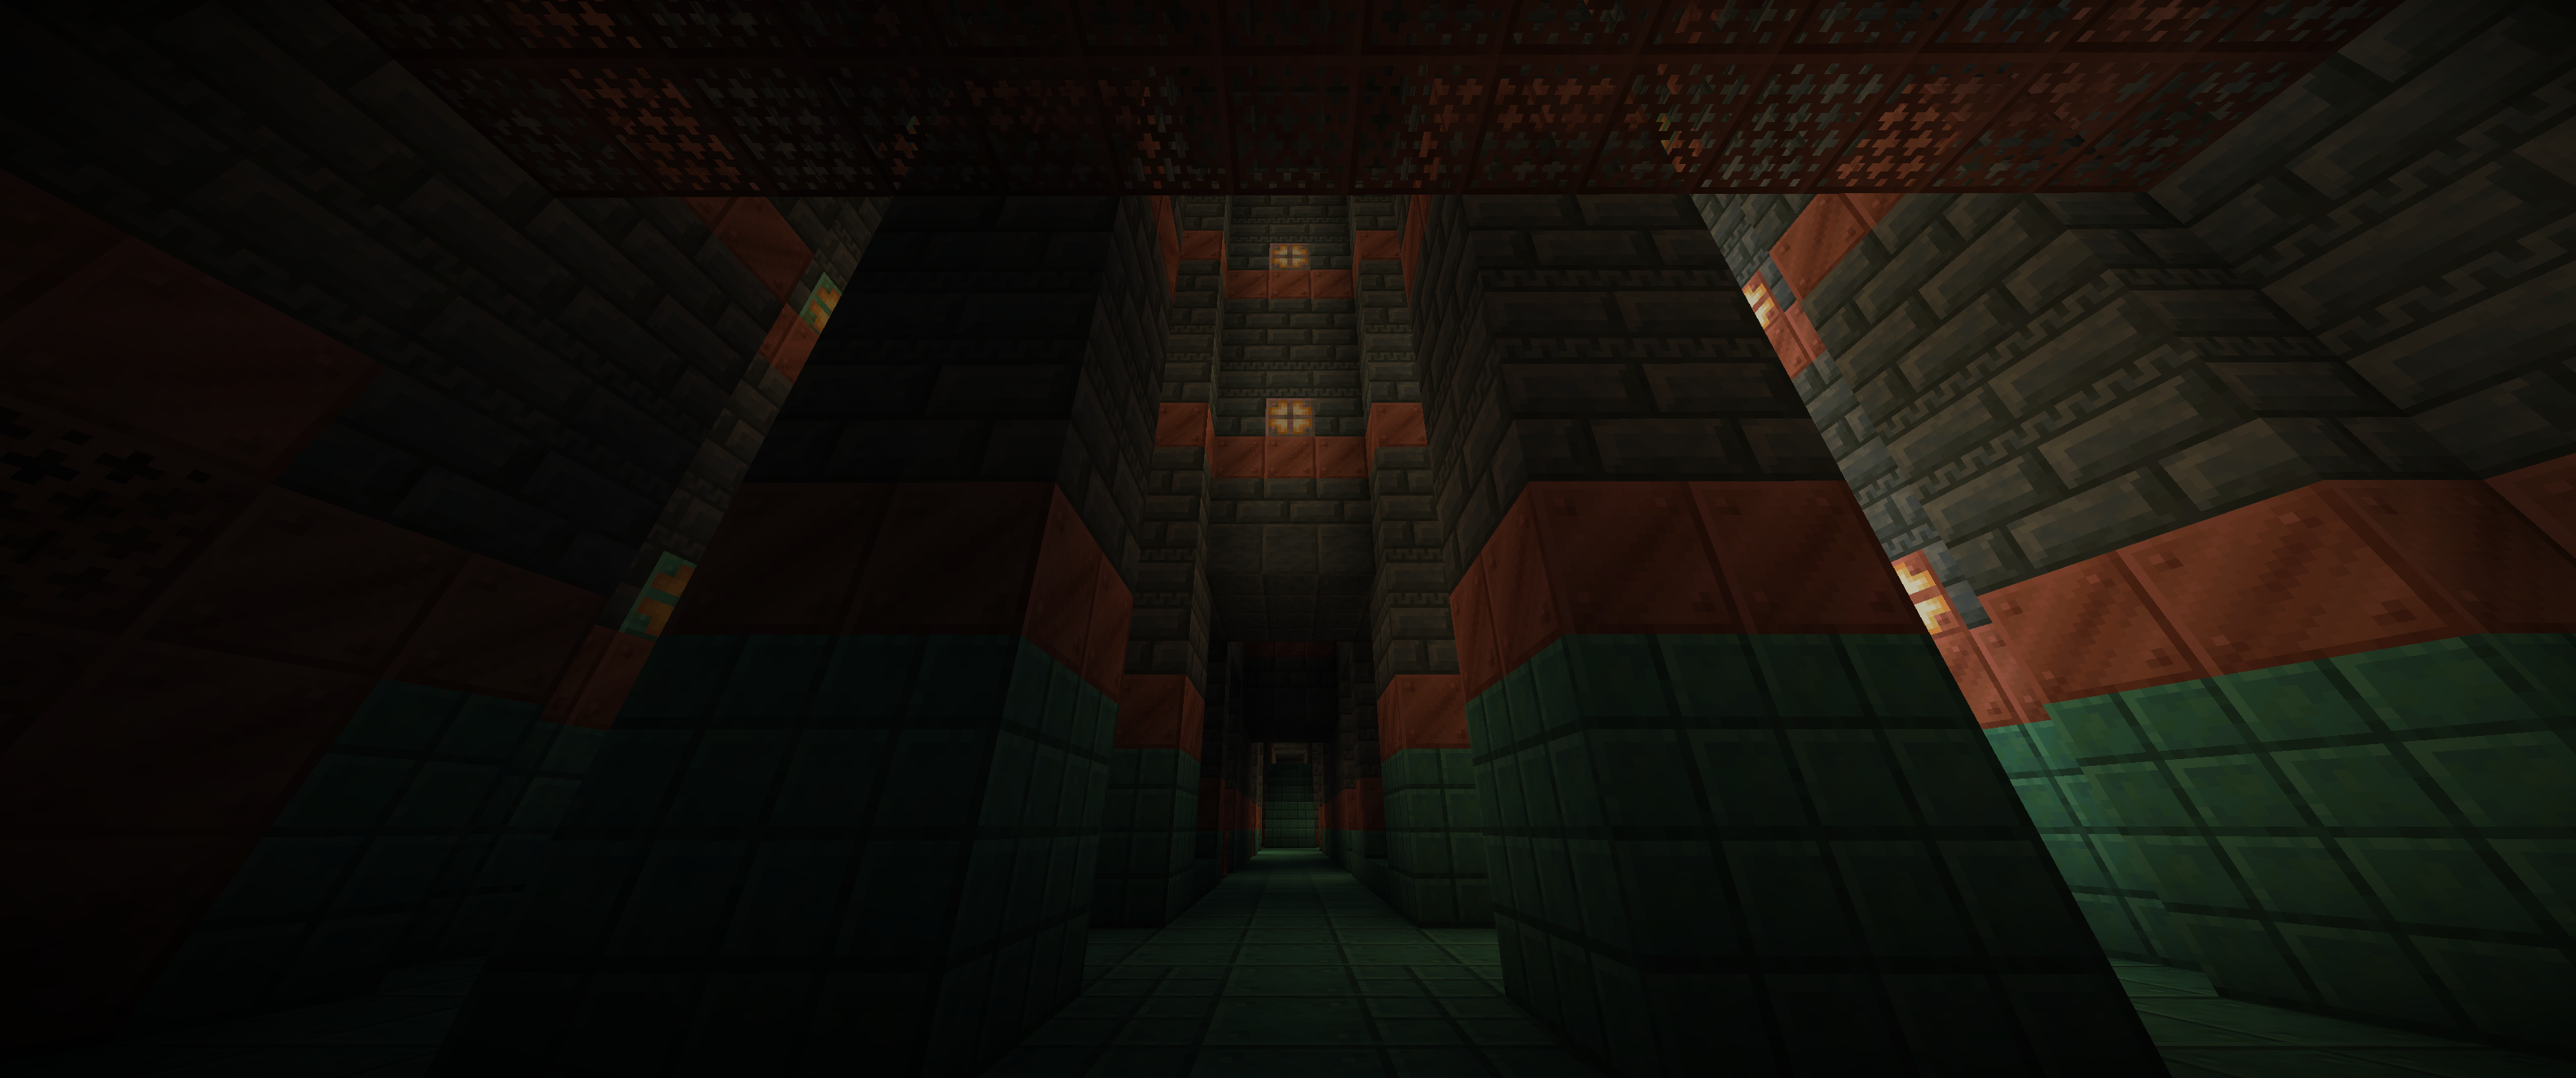 looking down a darker corridor